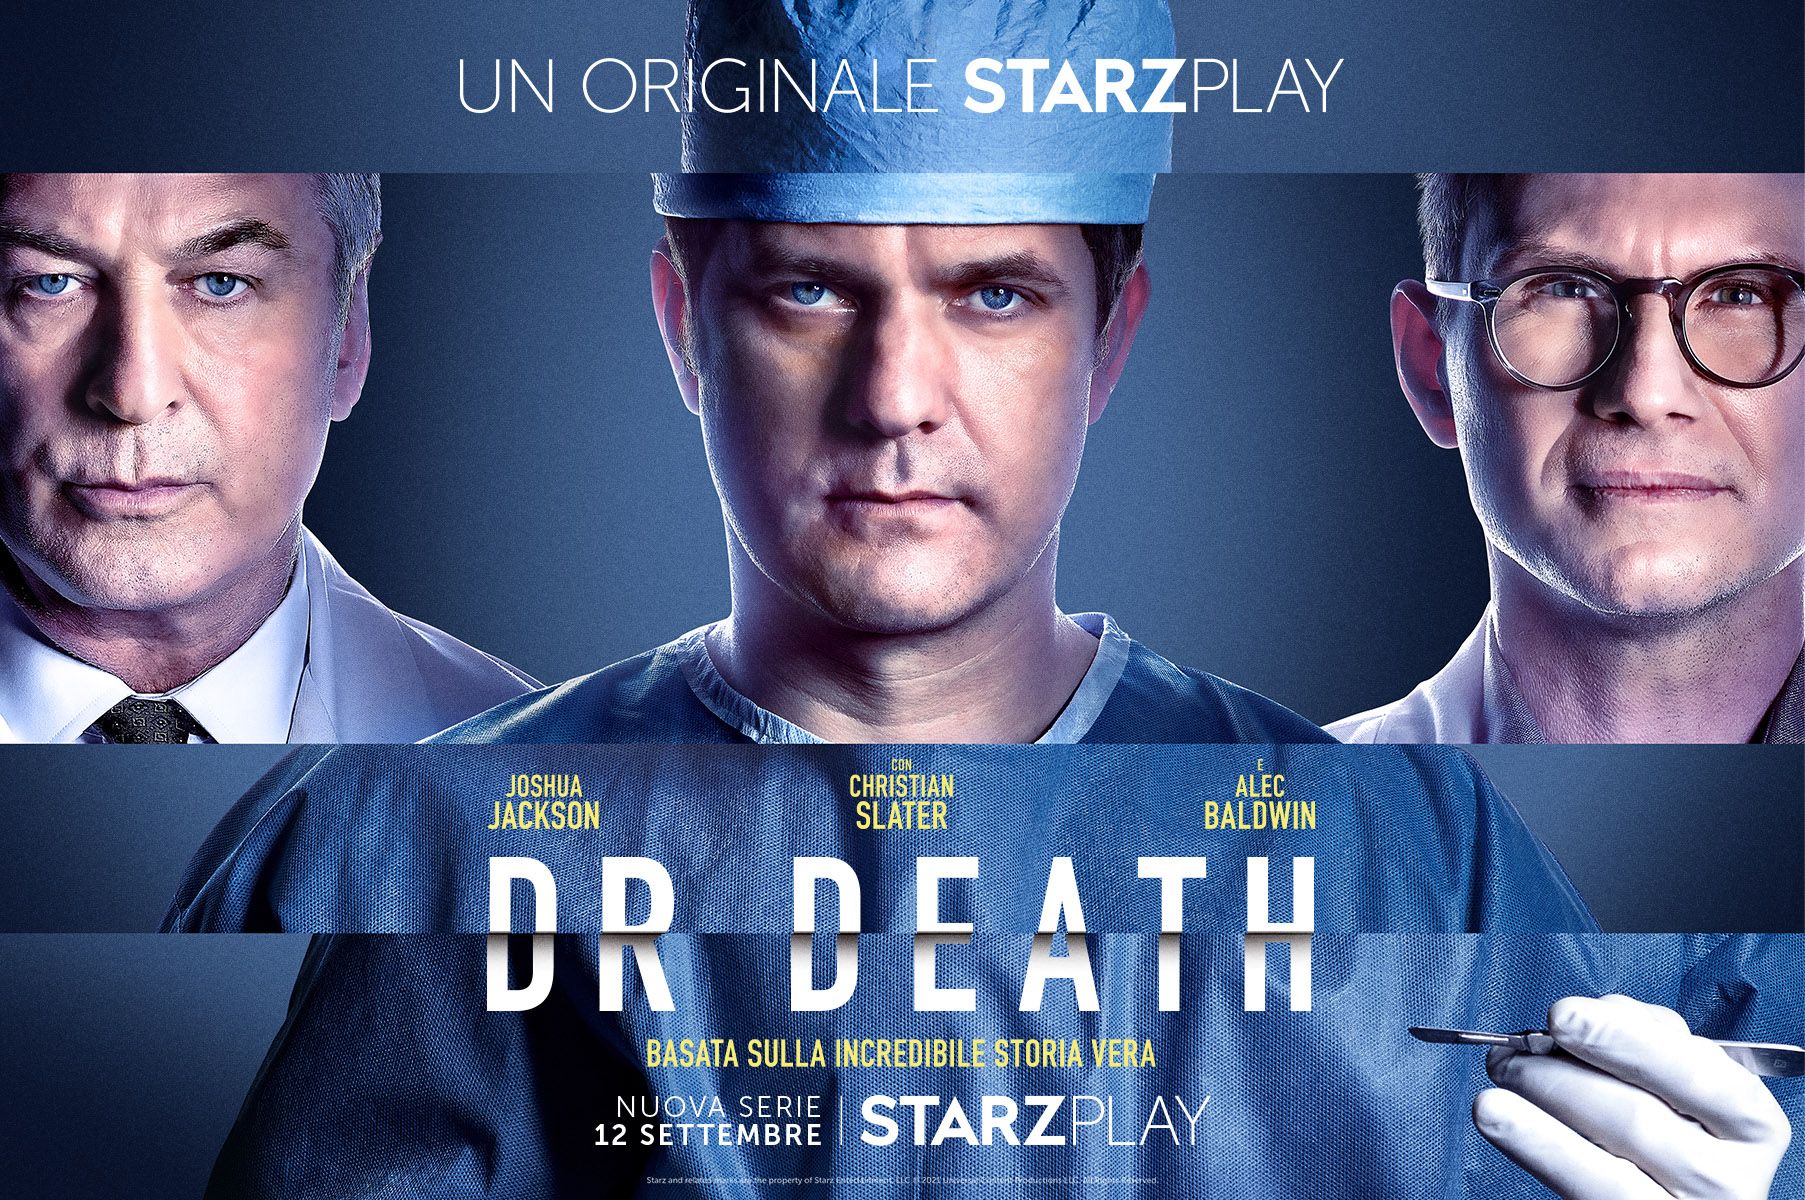 Dr. Death - Trailer ufficiale della serie con Joshua Jackson